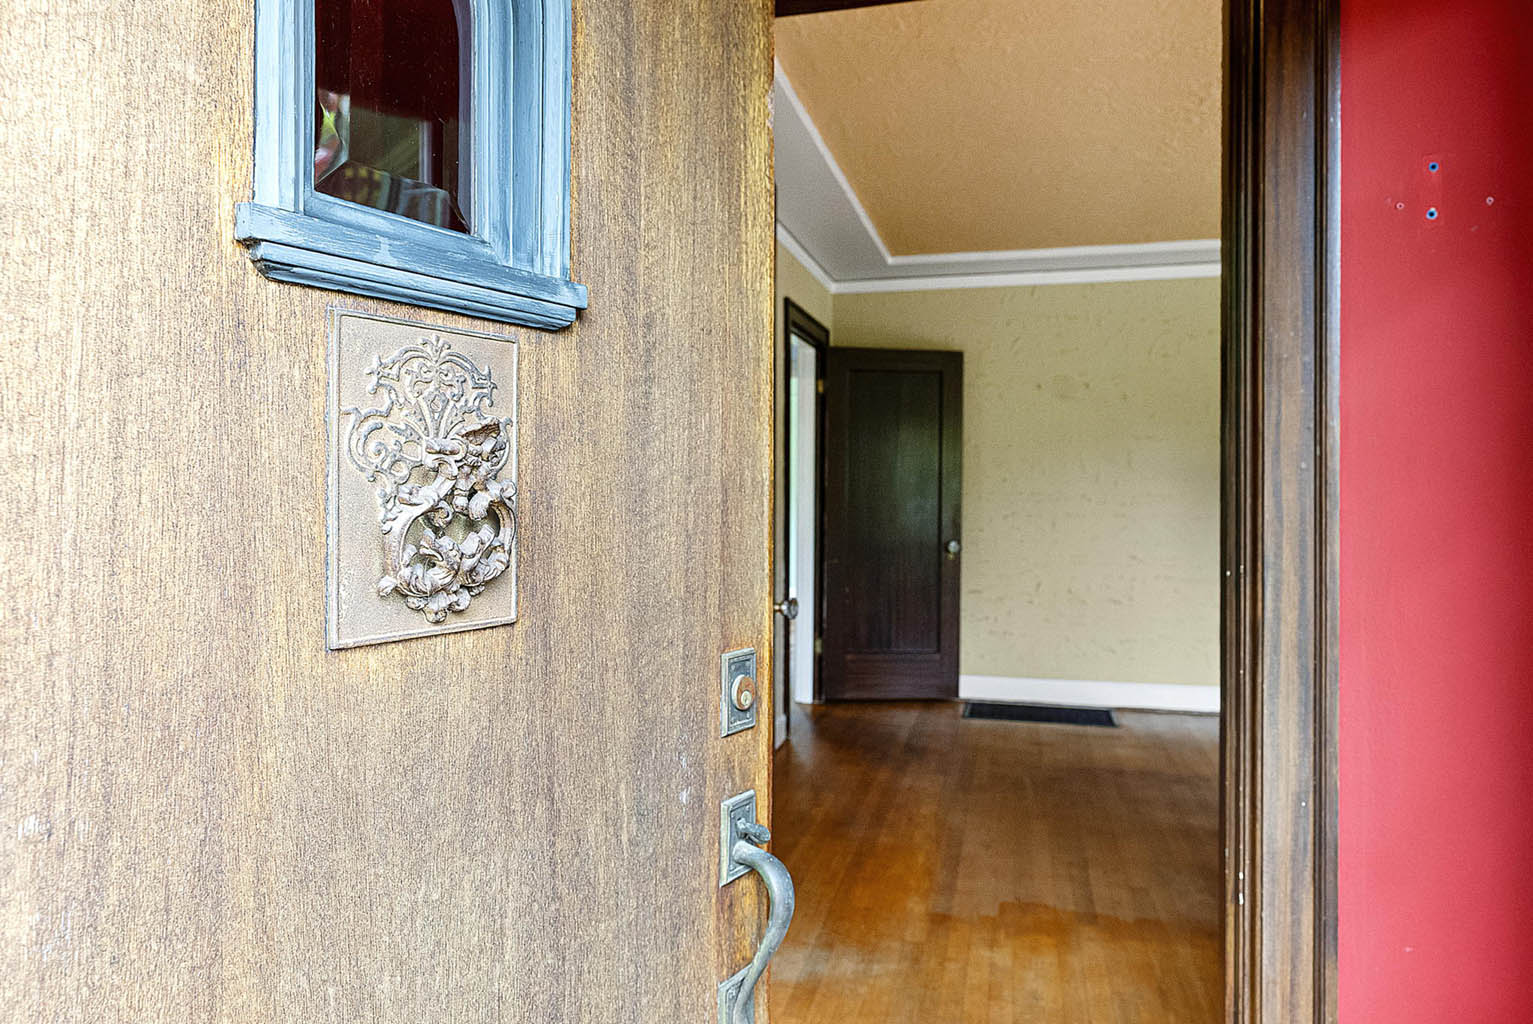 Original front door